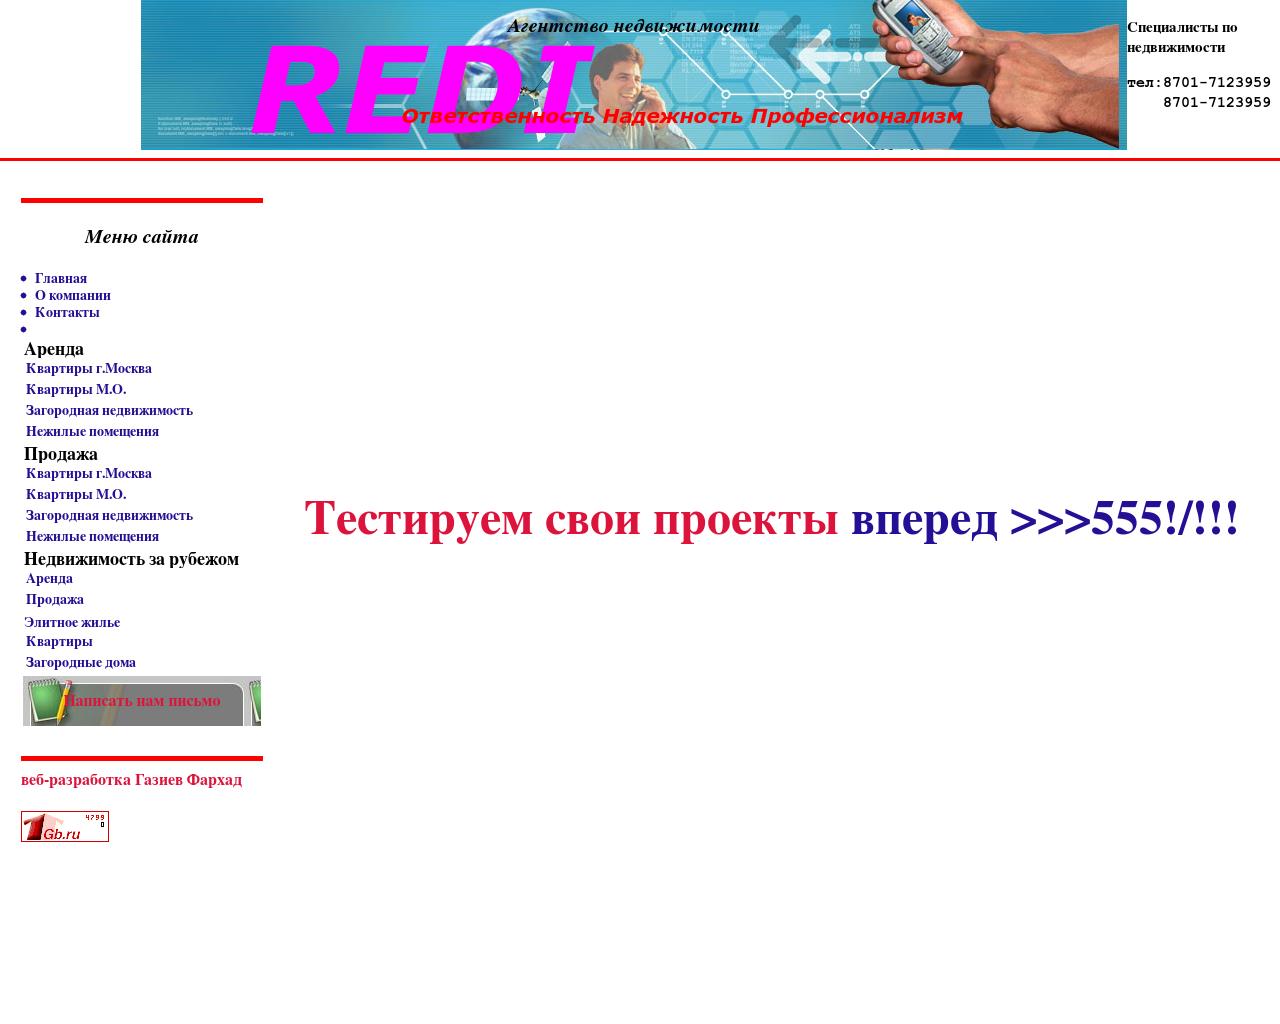 Изображение сайта testnet.ru в разрешении 1280x1024